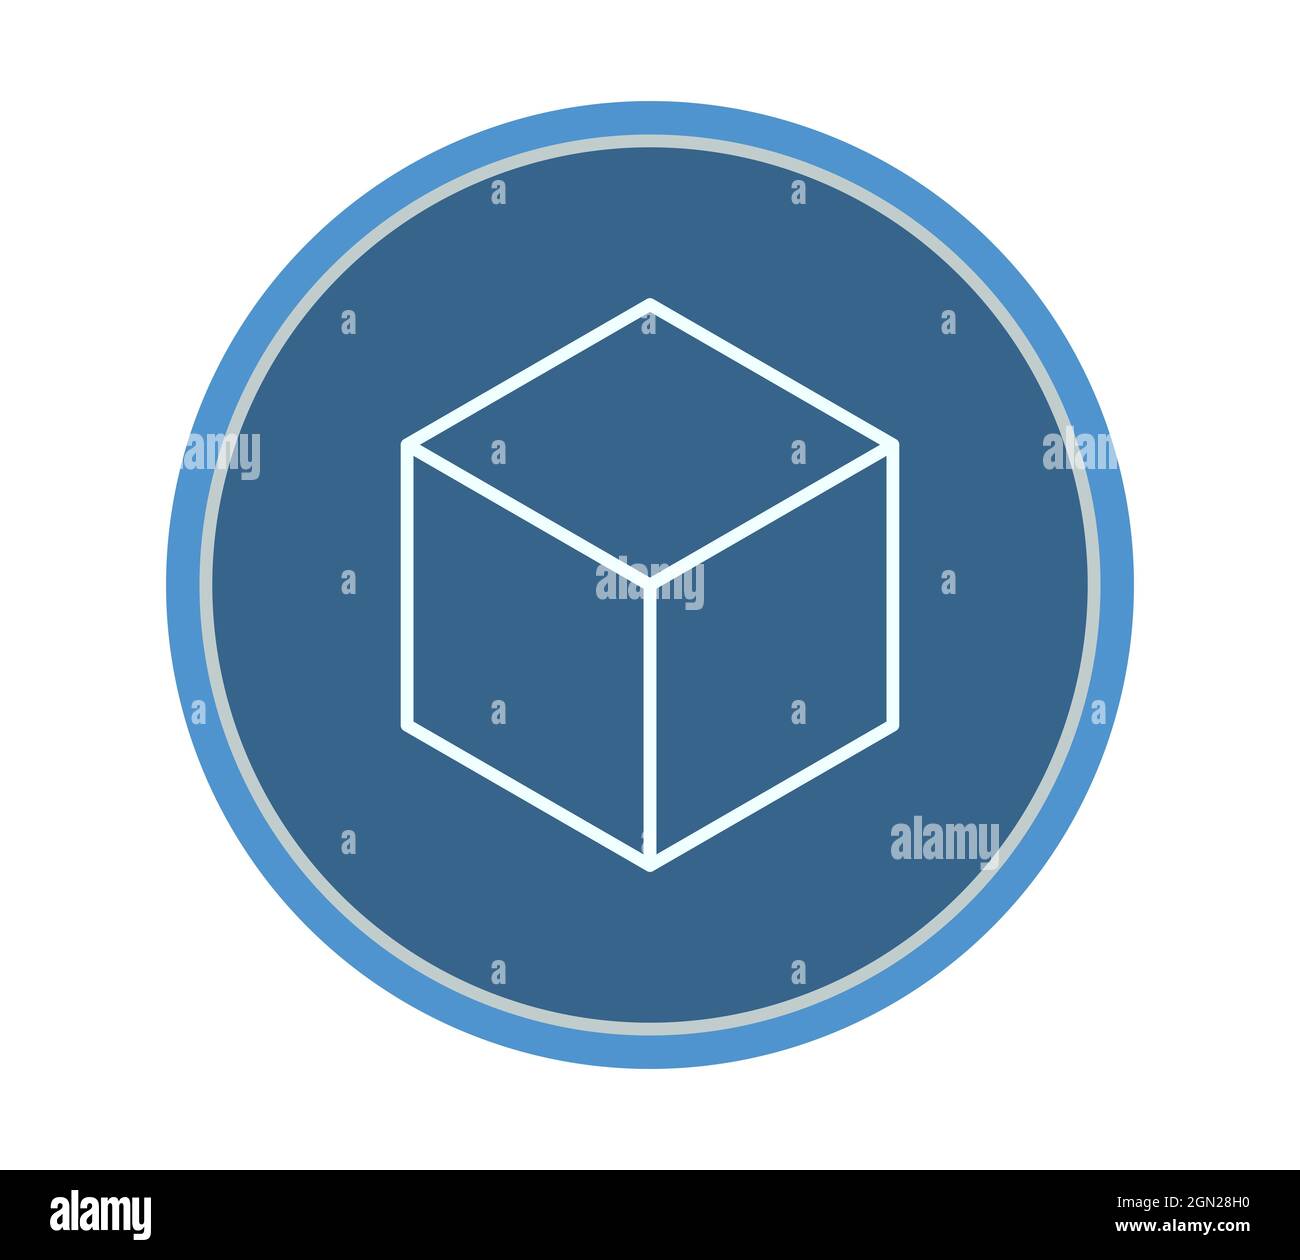 simbolo del cubo all'interno di un cerchio, illustrazione isolata in bianco Foto Stock